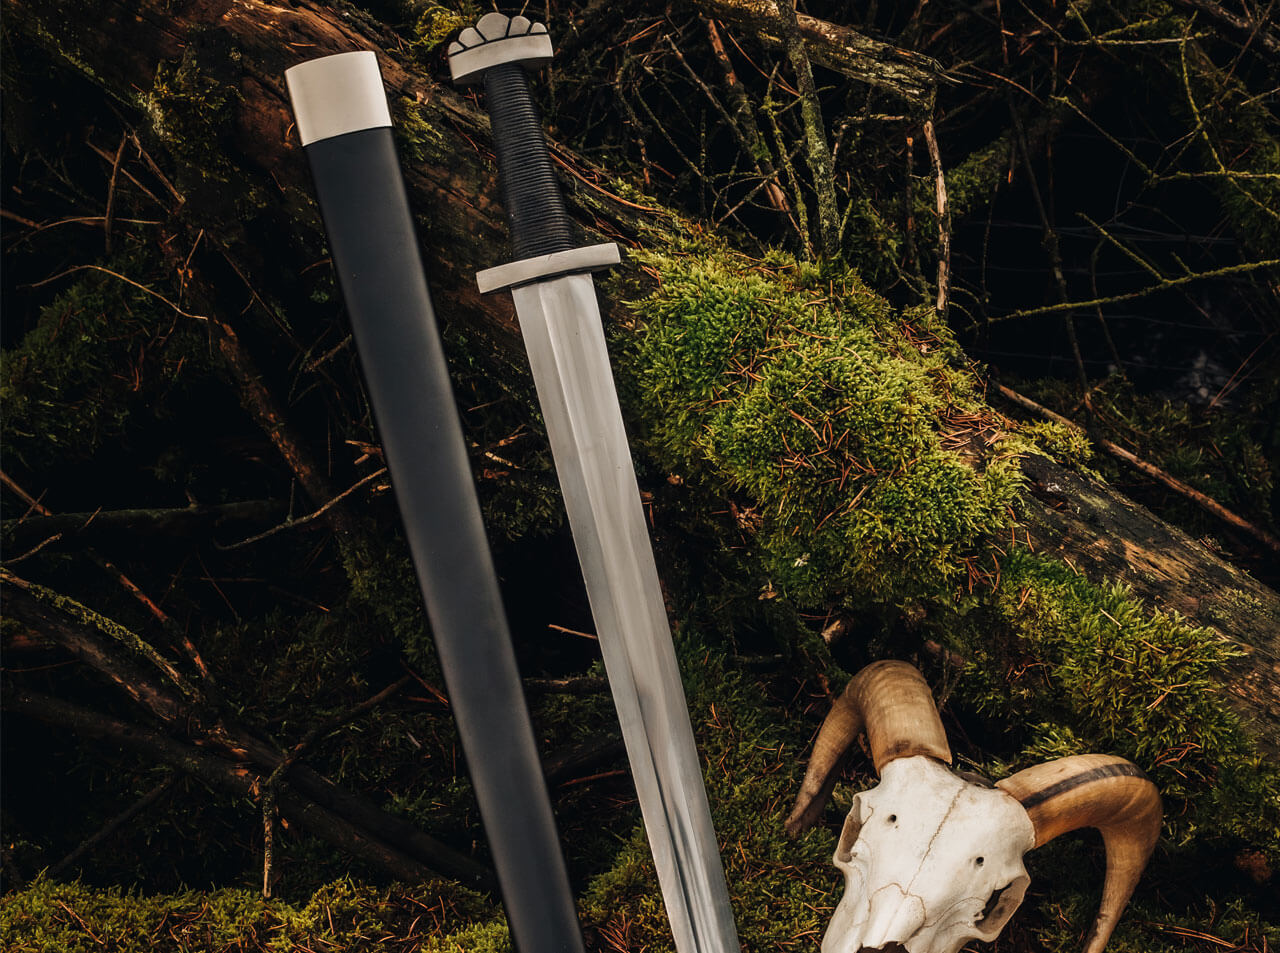 magnum-viking-s-sword-05zs041_8